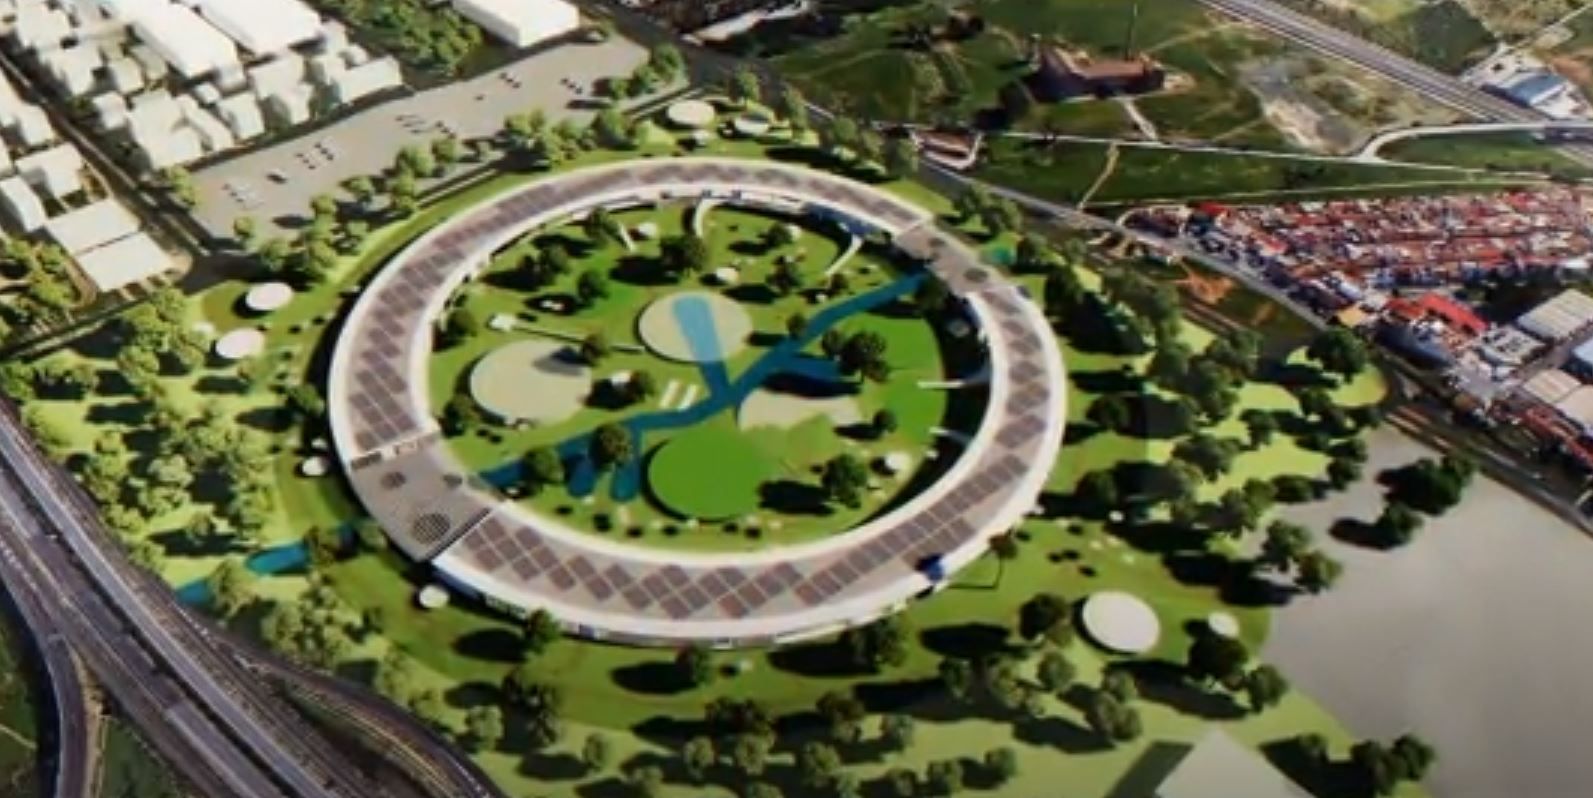 Diseño del recinto para la Expo 2027 en Málaga